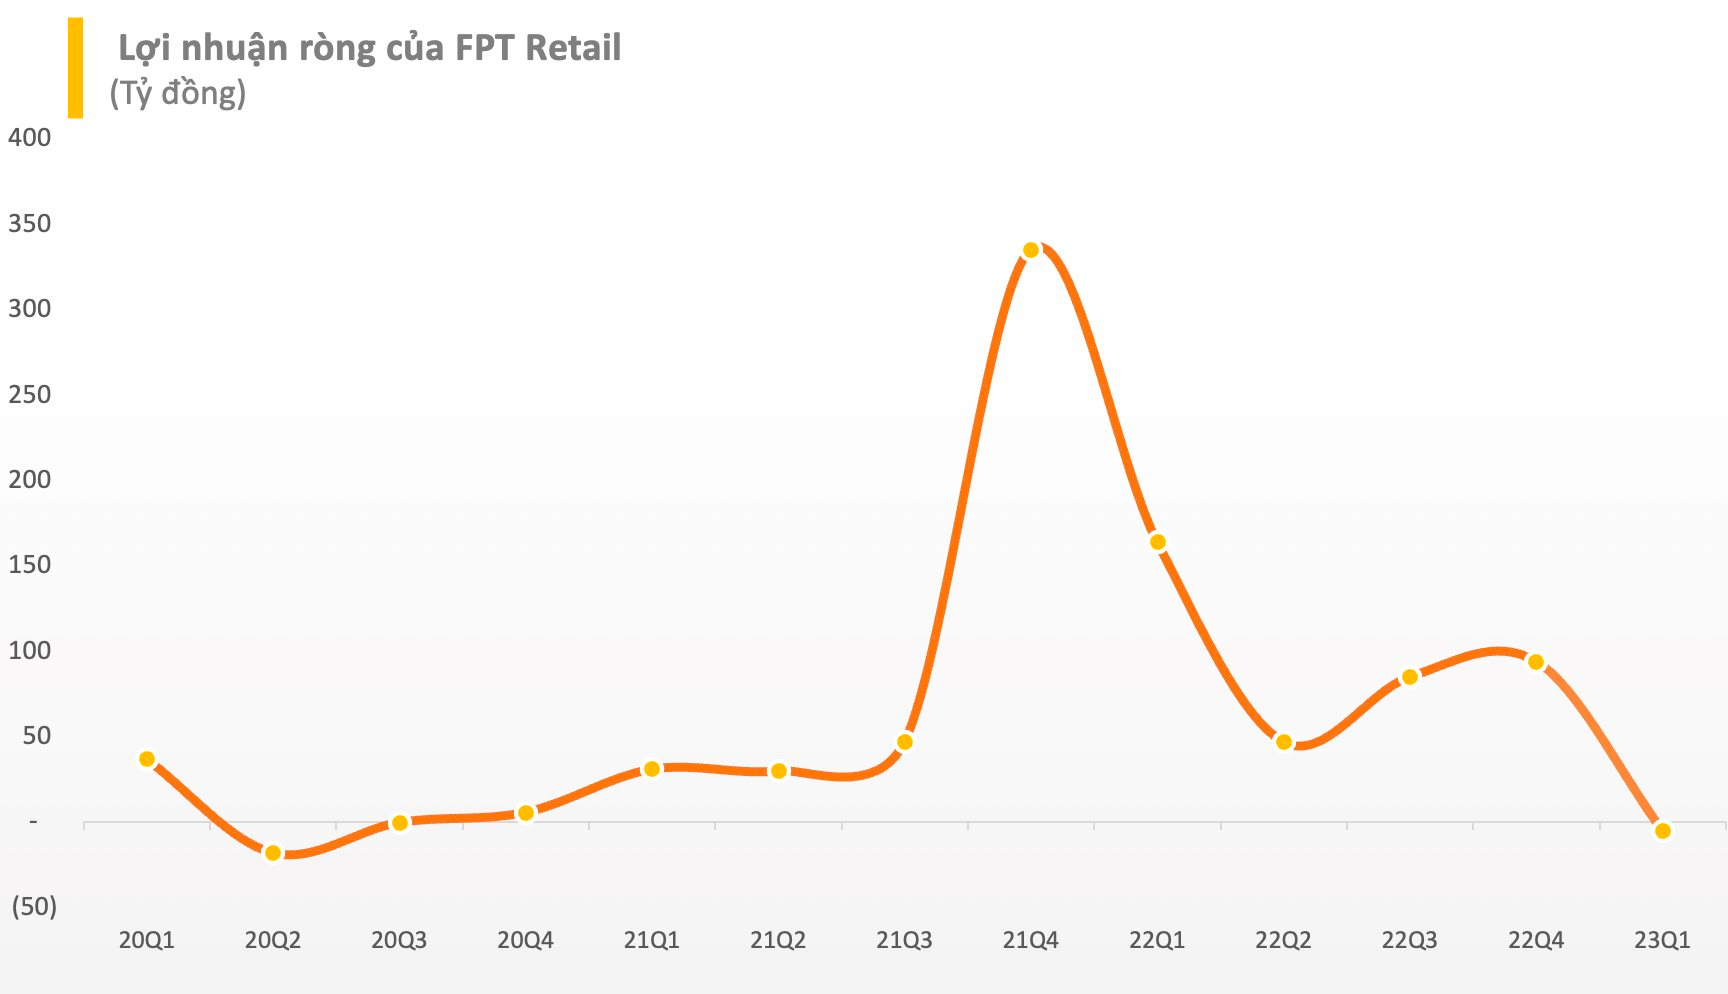 FPT Retail (FRT) lỗ ròng 5 tỷ đồng trong quý I bất chấp doanh thu chuỗi Long Châu tăng trưởng mạnh - Ảnh 3.